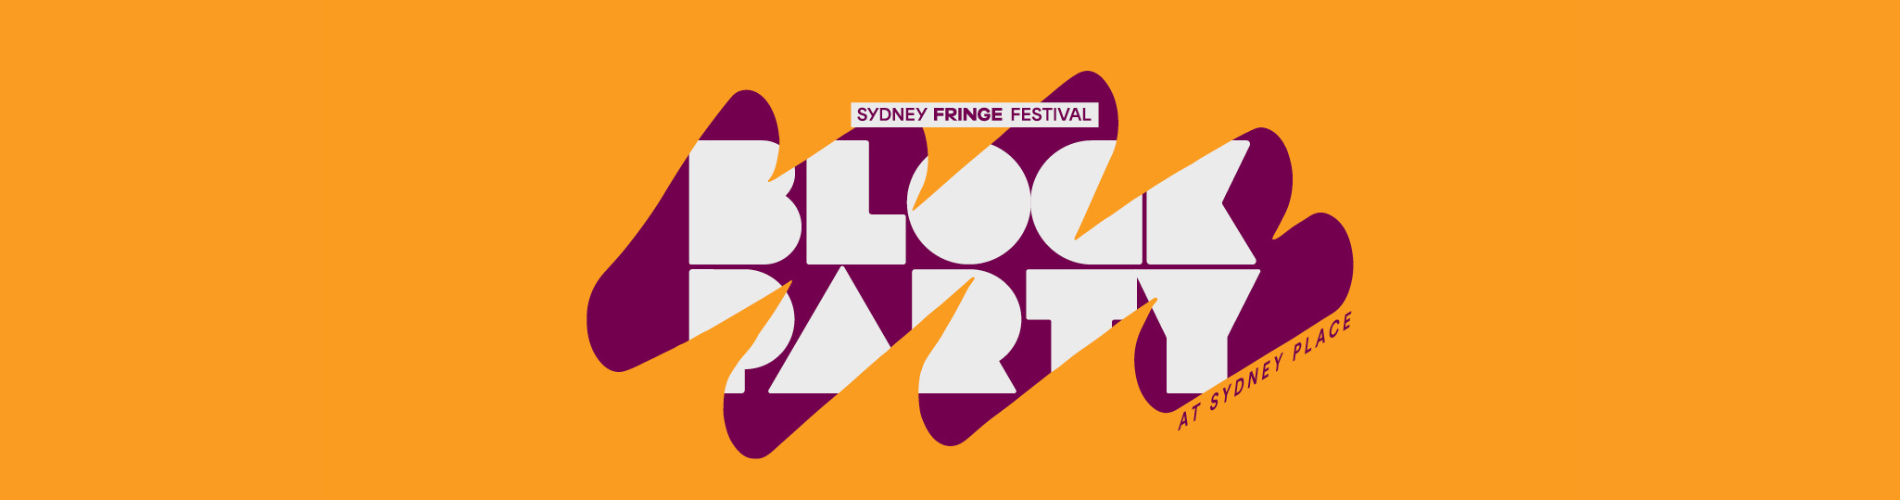 Sydney Fringe Block Party 1900 x 500px (1).png